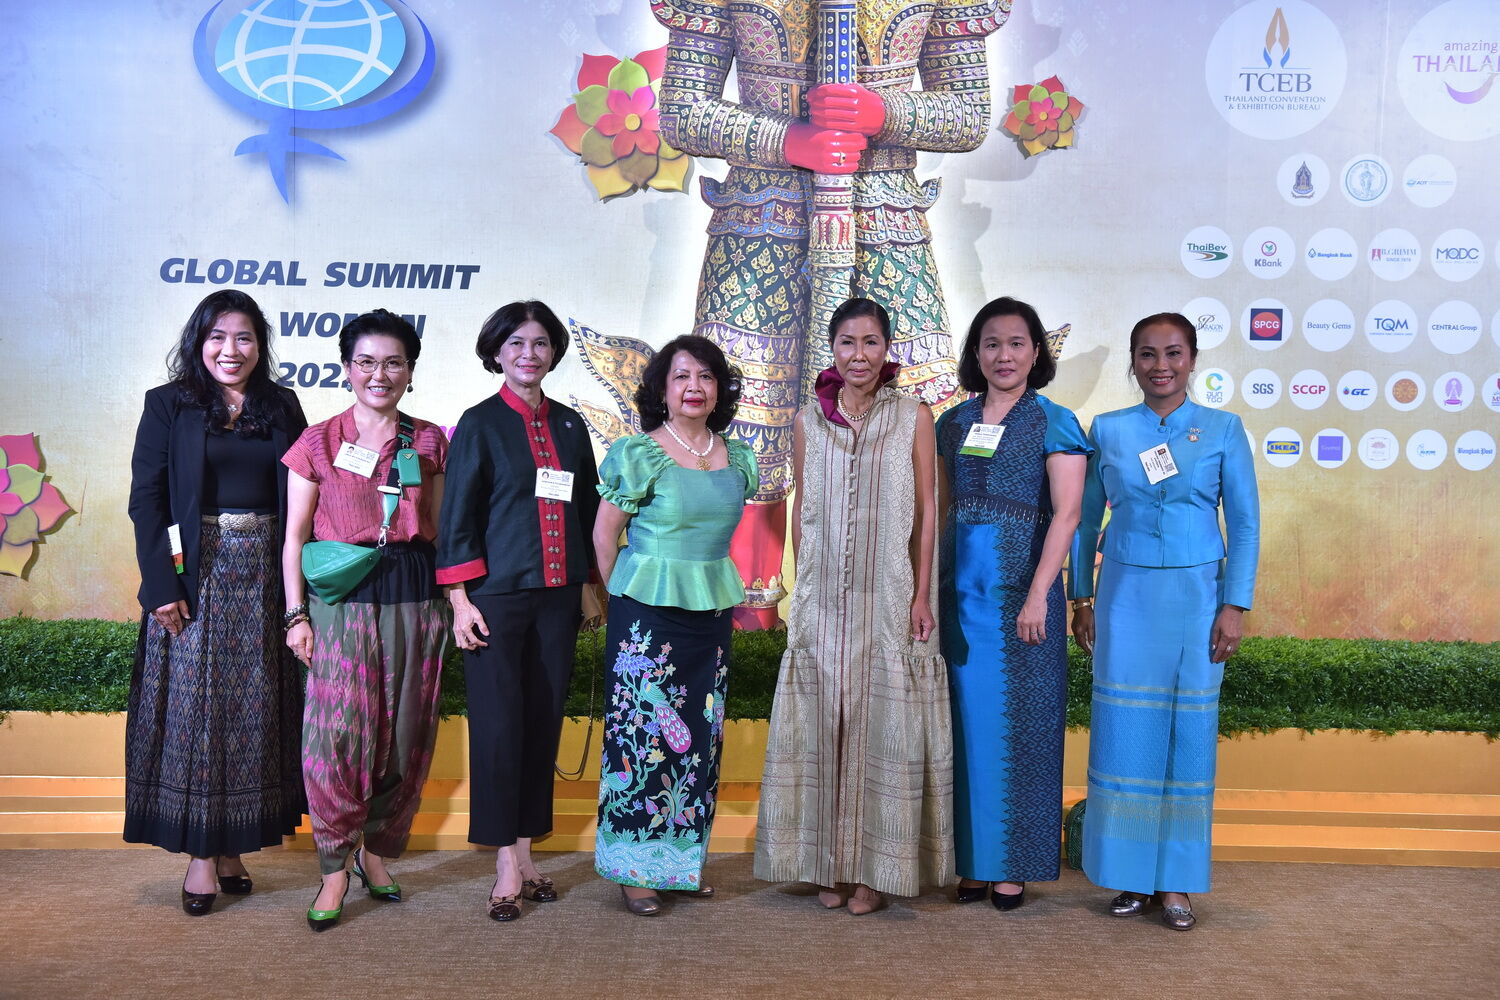 สยามพิวรรธน์ ต้อนรับคณะผู้นำสตรีโลกกว่า 51 ประเทศ ในงานประชุม สุดยอด ผู้นำสตรีโลก 2565 2022